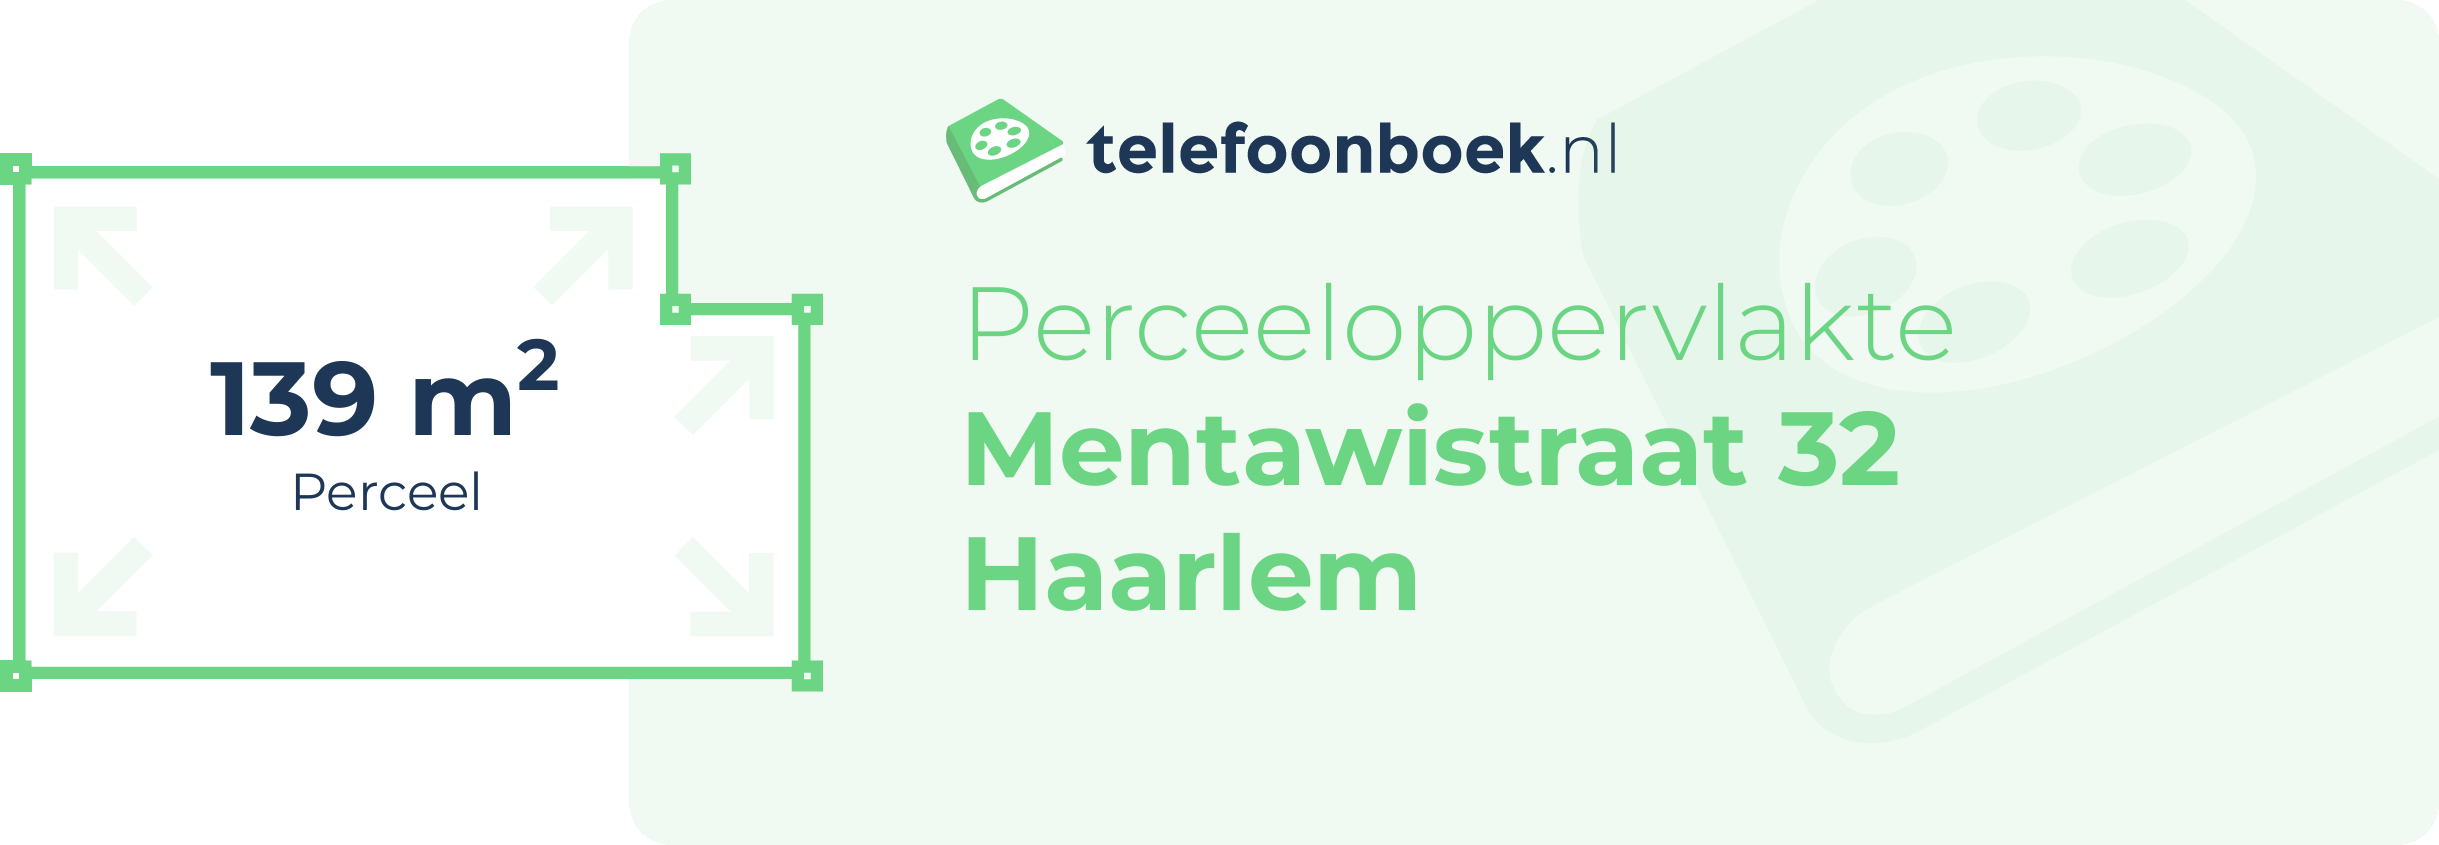 Perceeloppervlakte Mentawistraat 32 Haarlem